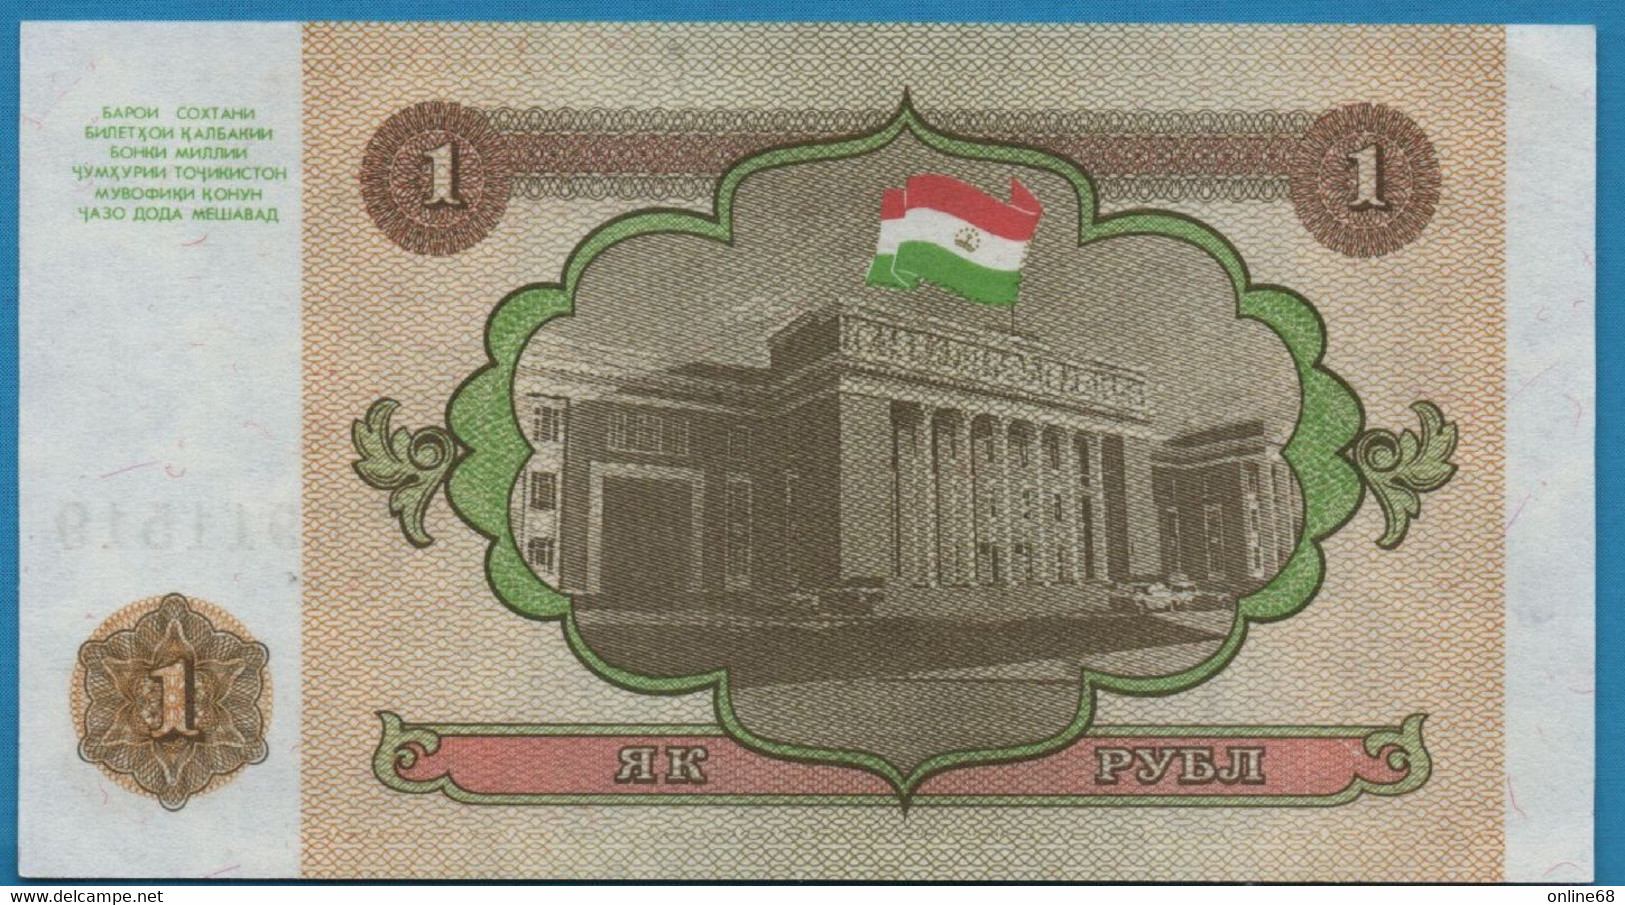 TAJIKISTAN 1 RUBL 1994 # AK 6911519 P# 1 - Tagikistan